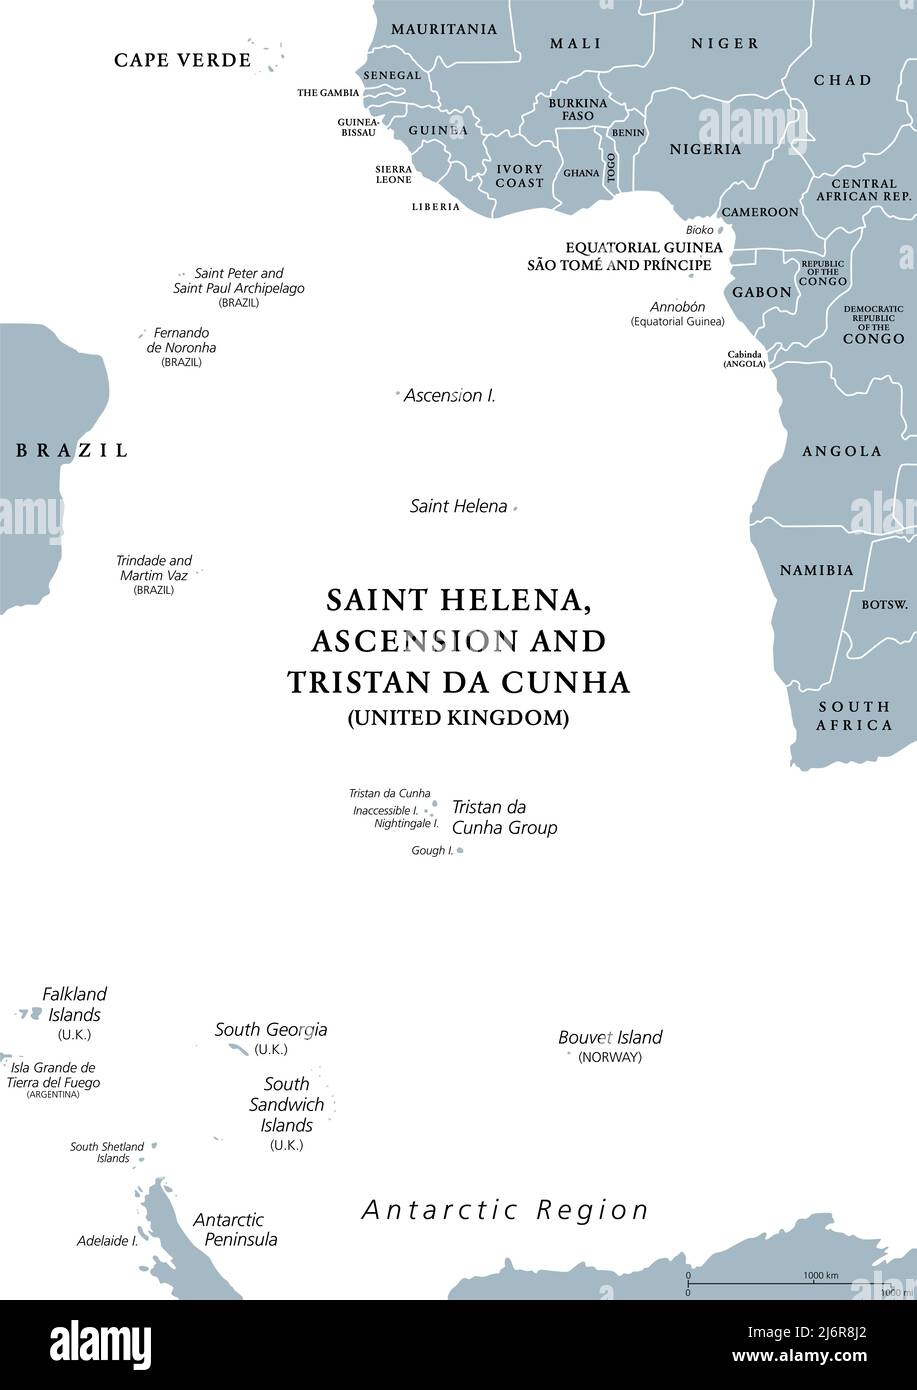 Graue politische Landkarte der Südatlantischen Inseln. Inseln und Inselgruppen zwischen Afrika und Brasilien, Kap Verde und der Antarktis. Stockfoto